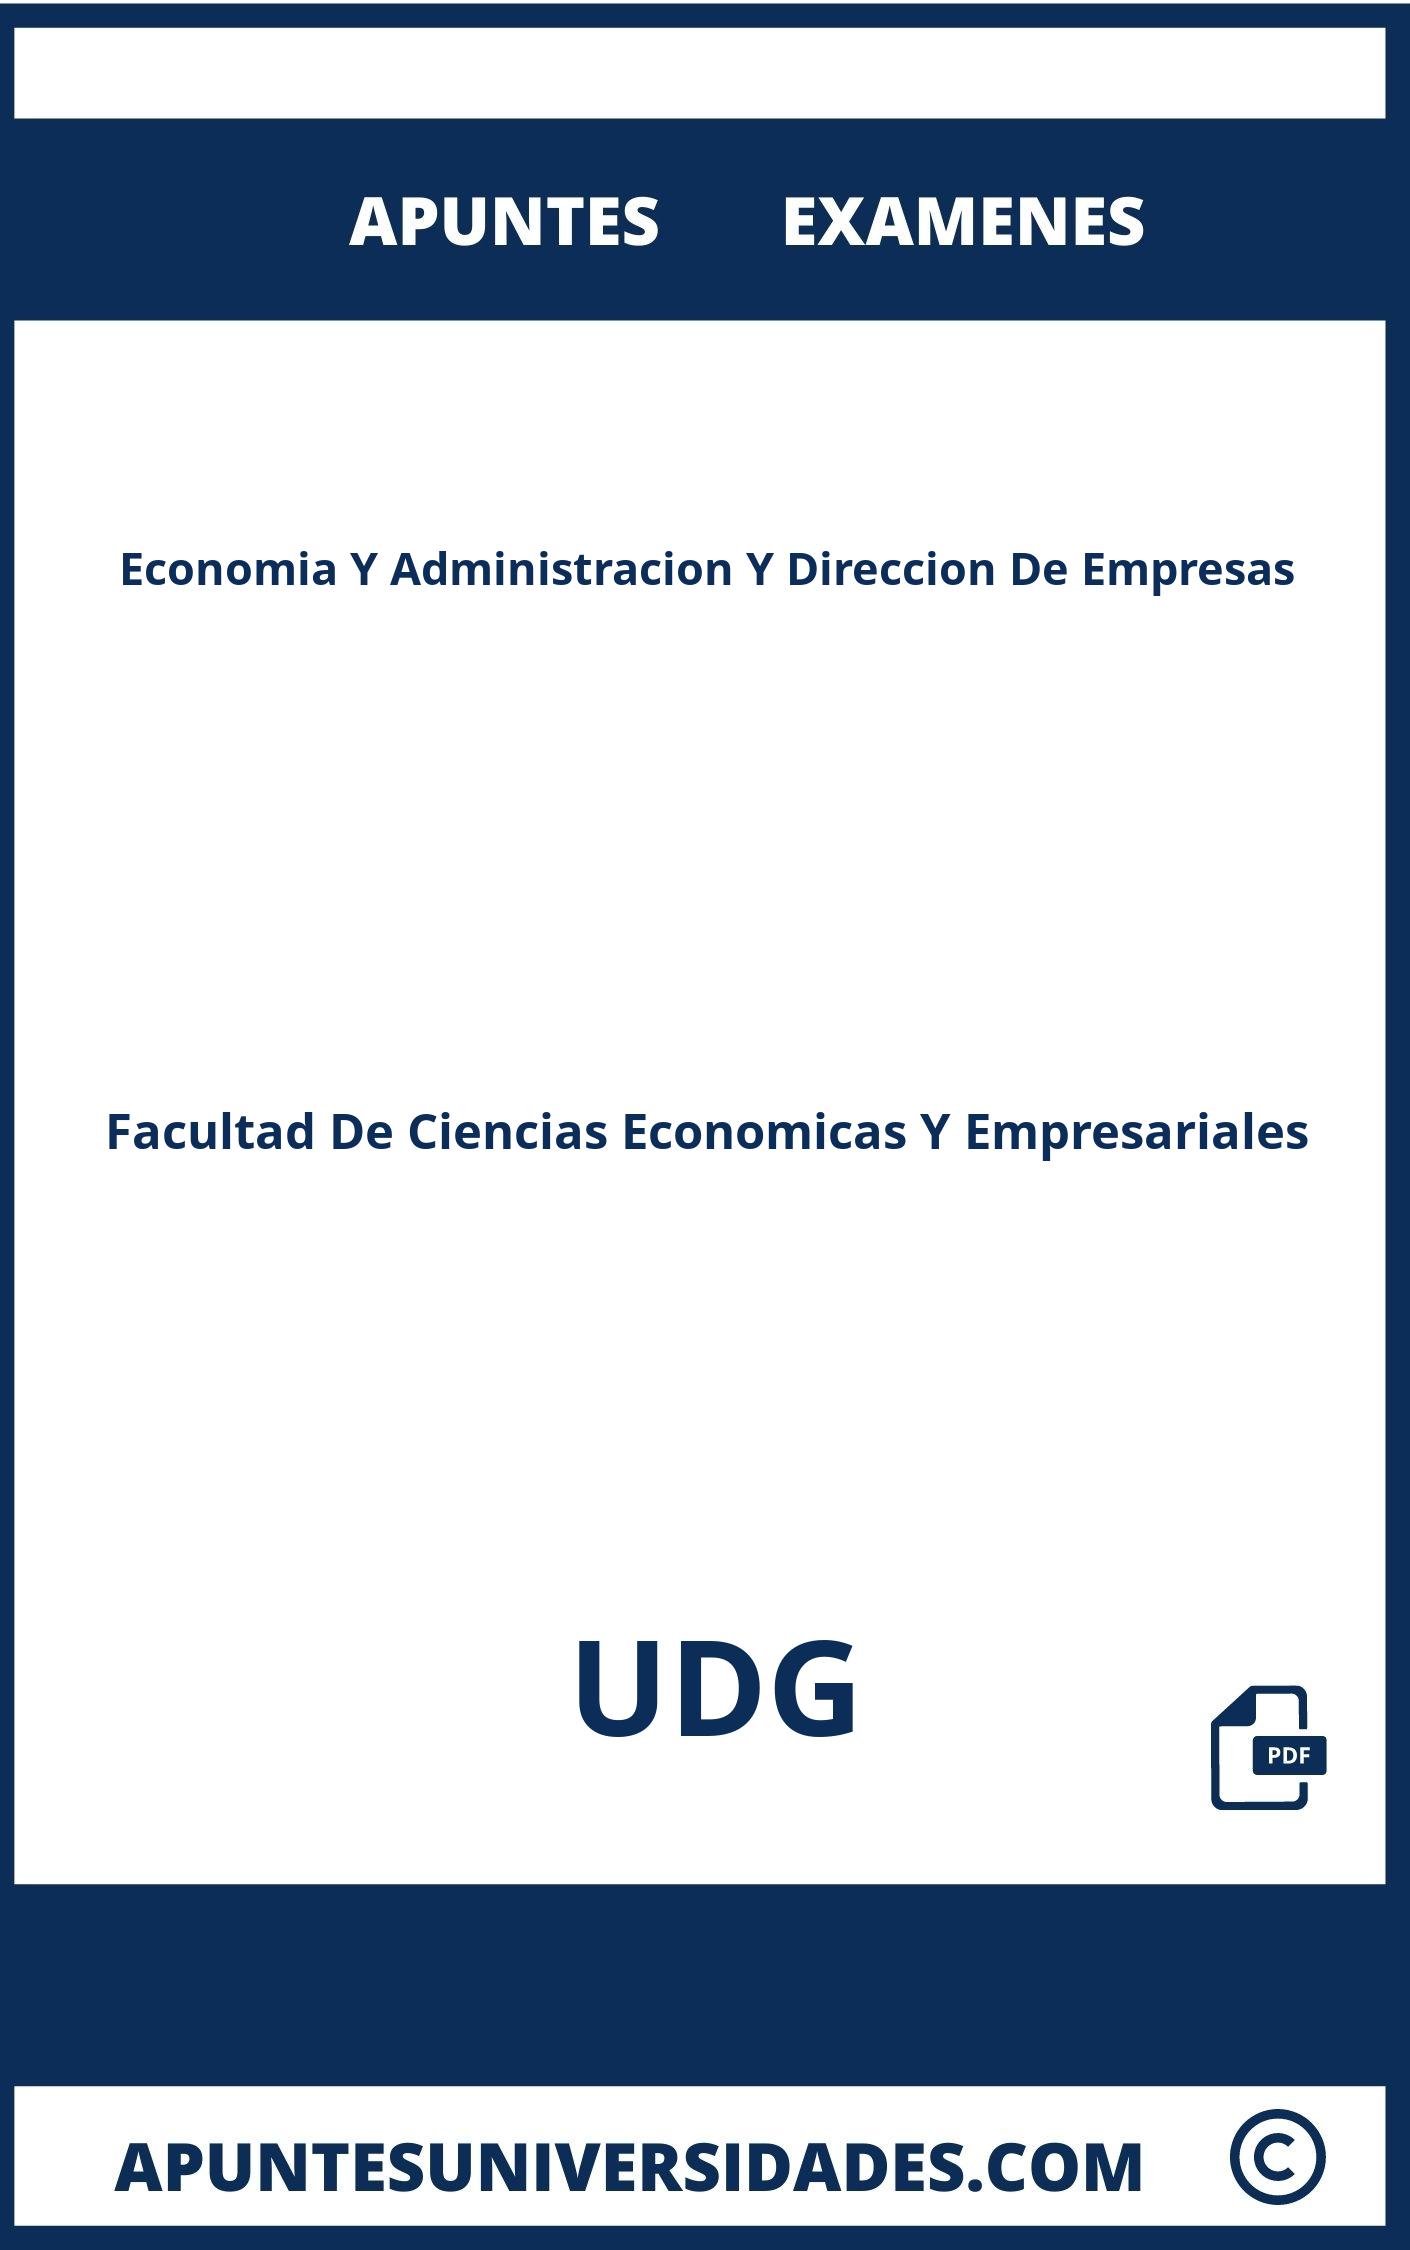 Apuntes y Examenes de Economia Y Administracion Y Direccion De Empresas UDG